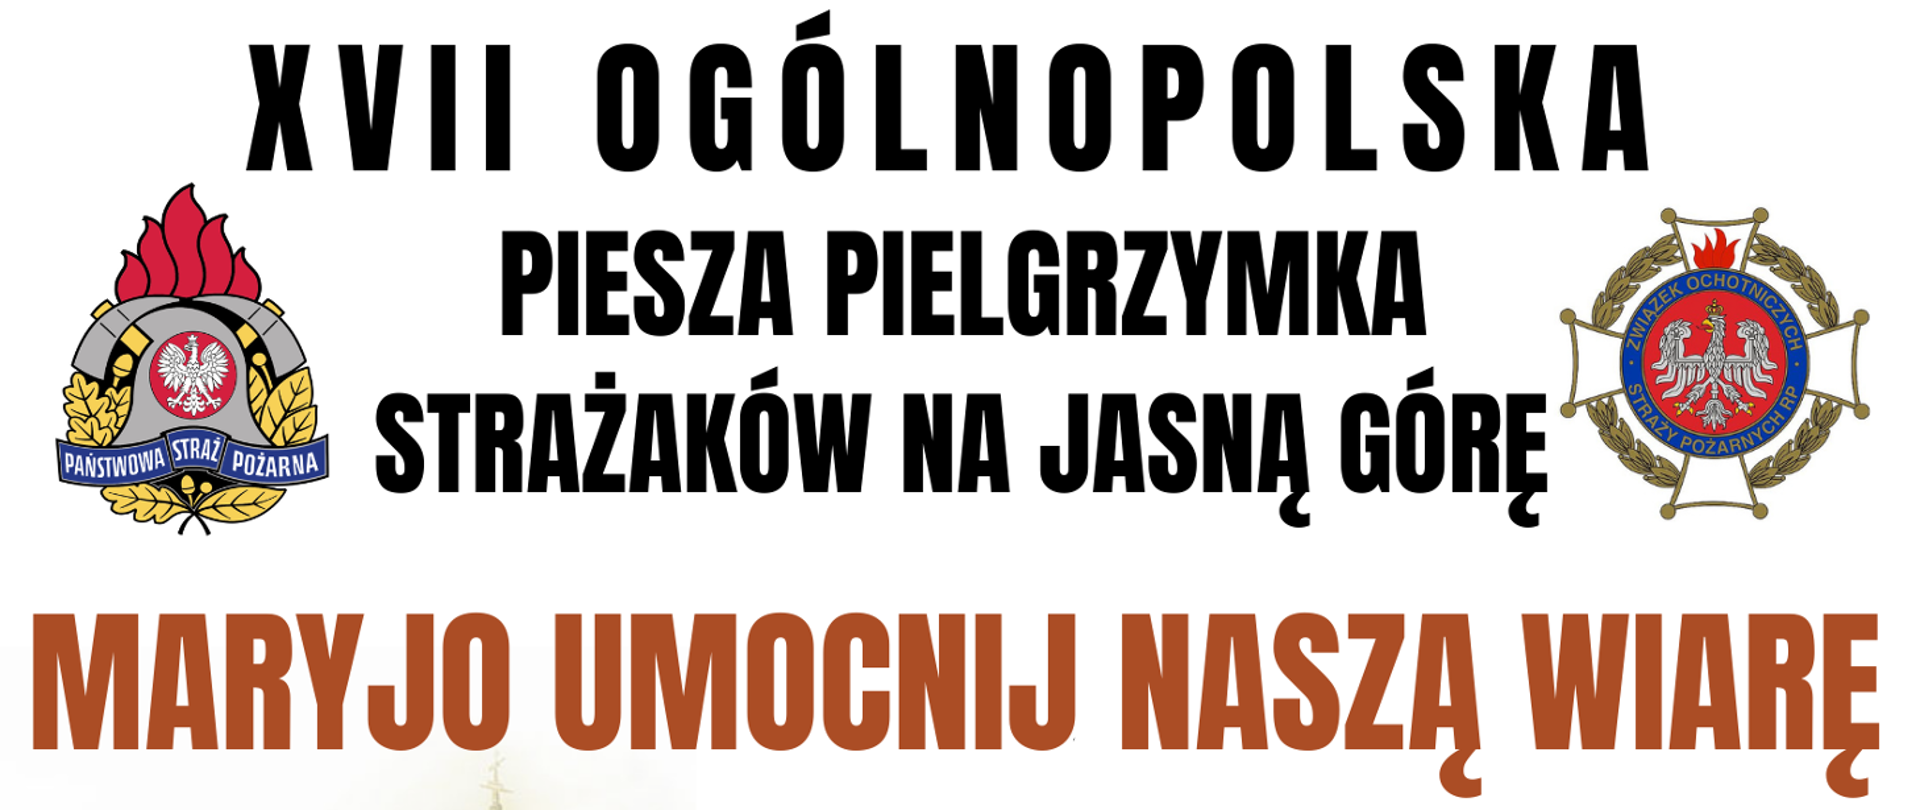 Plakat Pielgrzymka